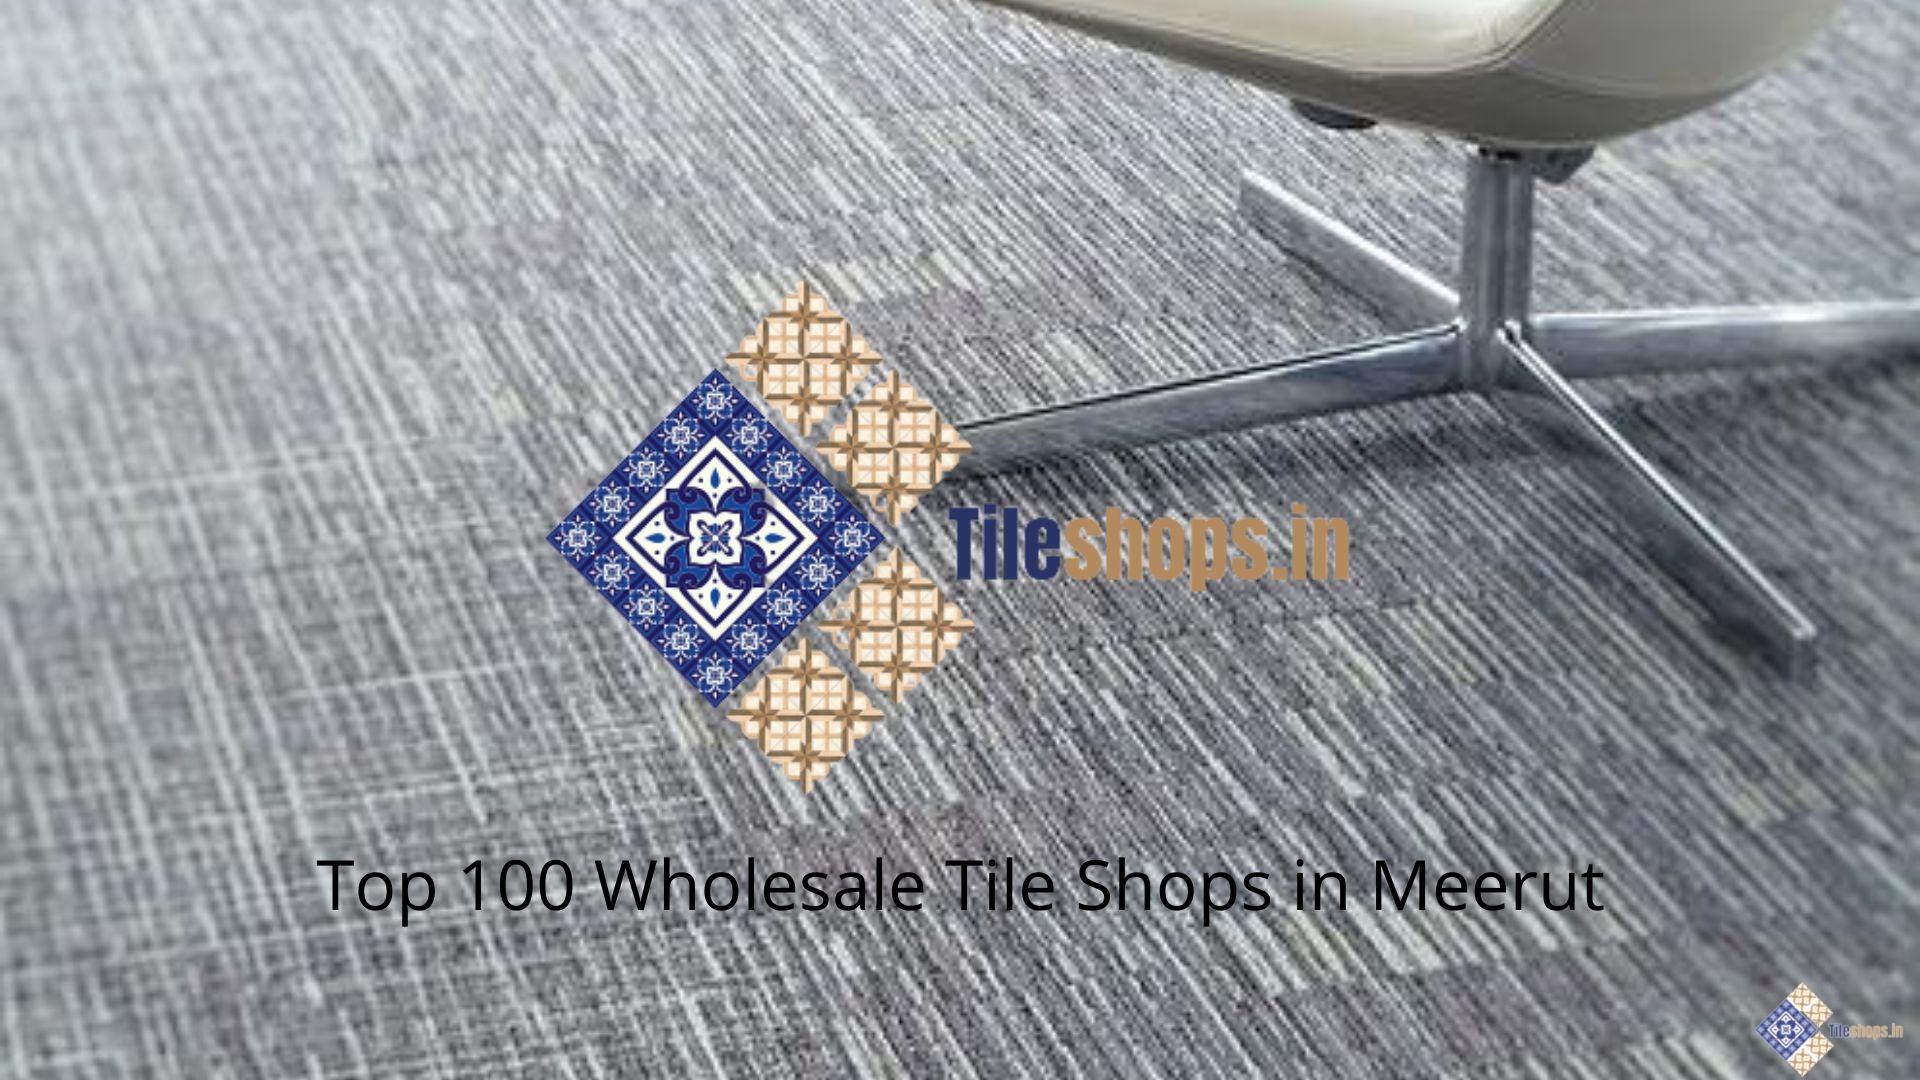 Top 100 Wholesale Tile Shops in Meerut